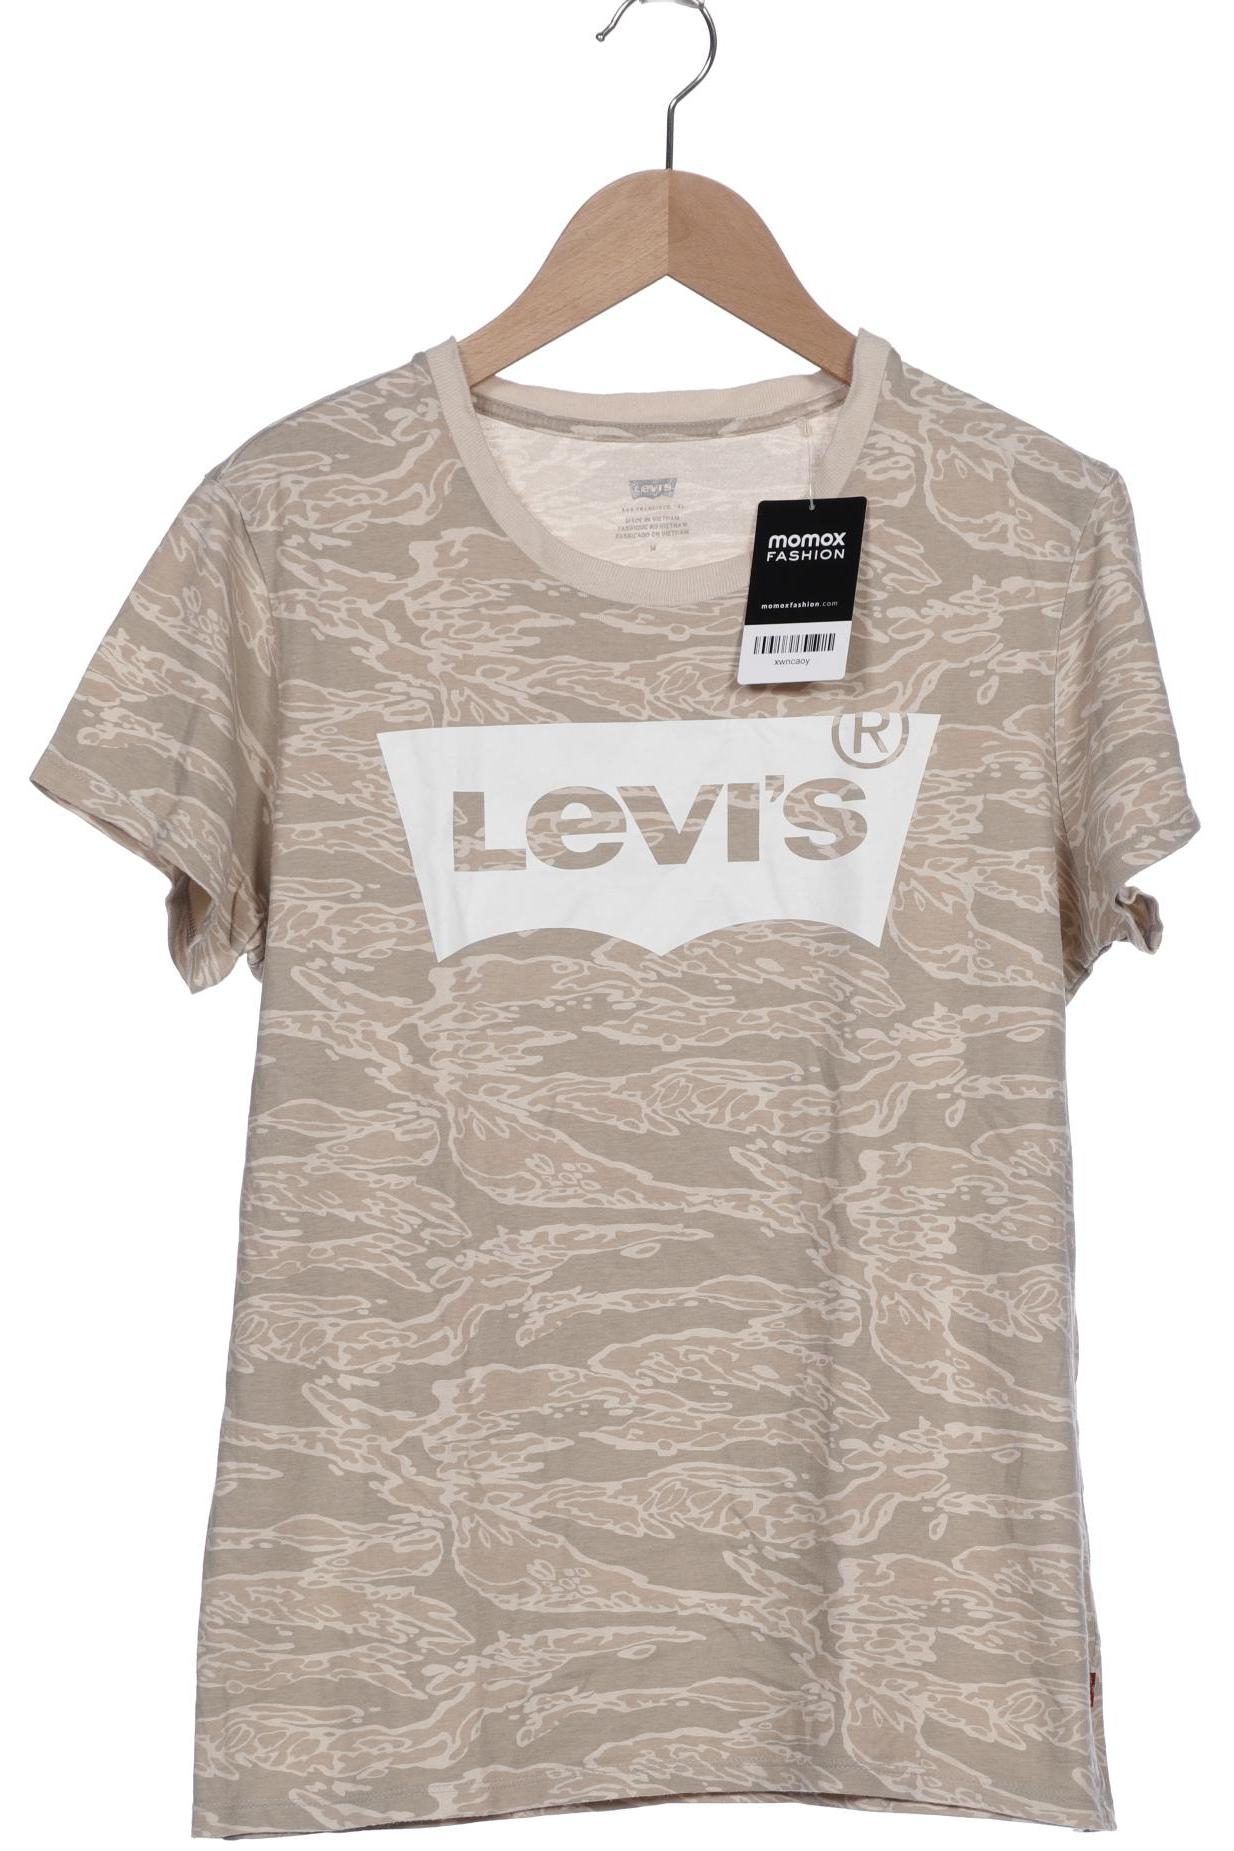 Levis Damen T-Shirt, beige von Levis